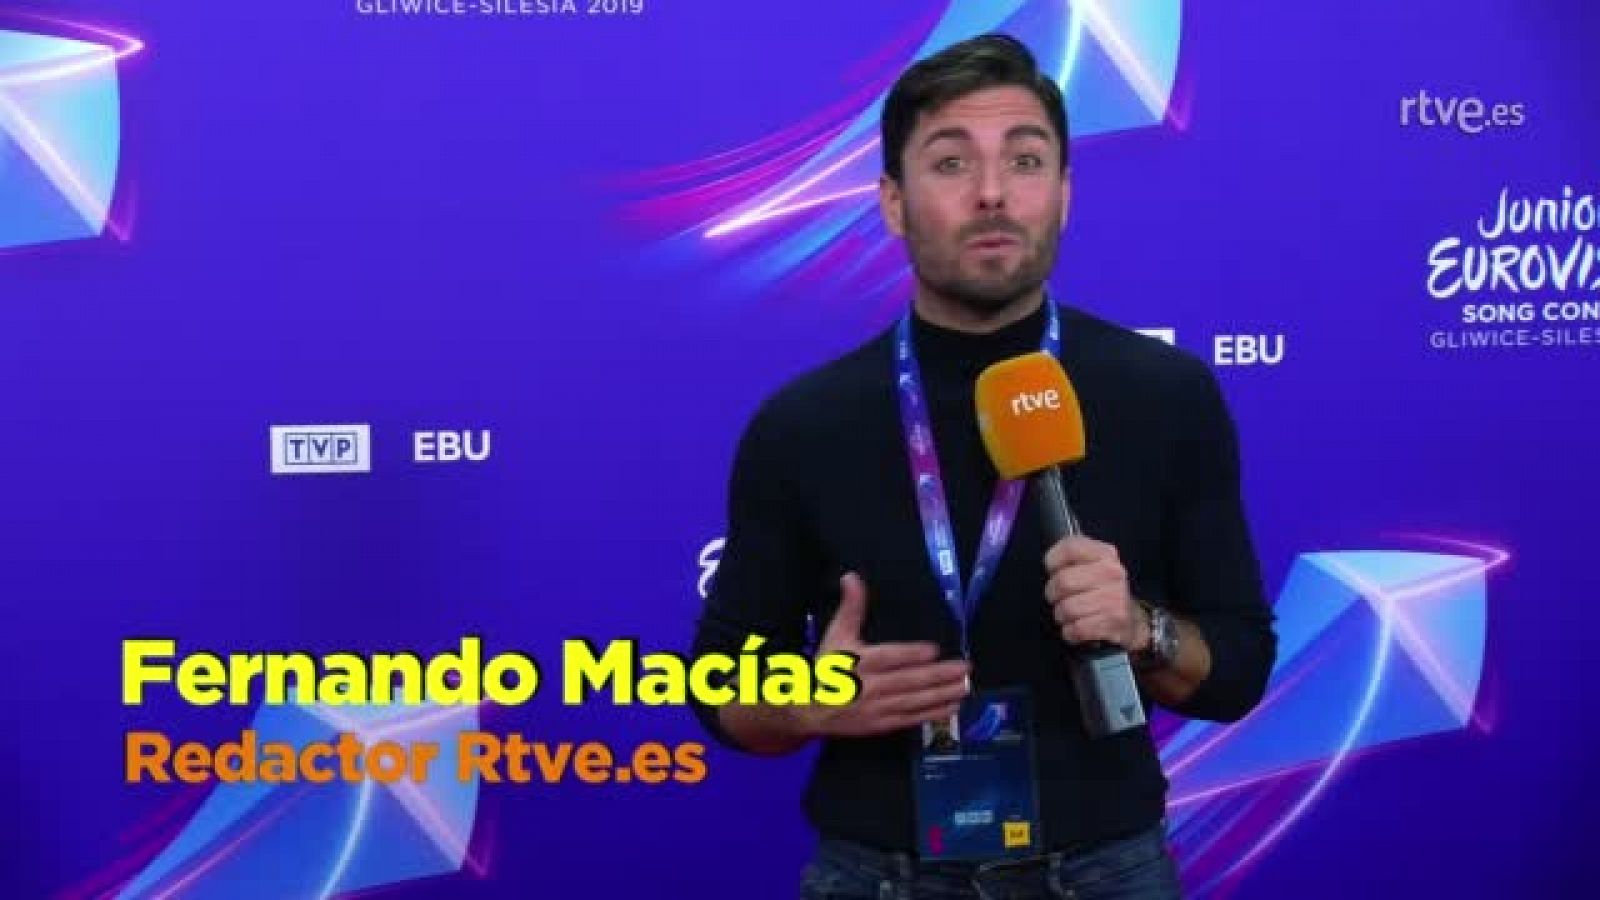 Eurovisión Junior - Melani deslumbra con su voz en la Ceremonia de inauguración de Eurovisión Junior